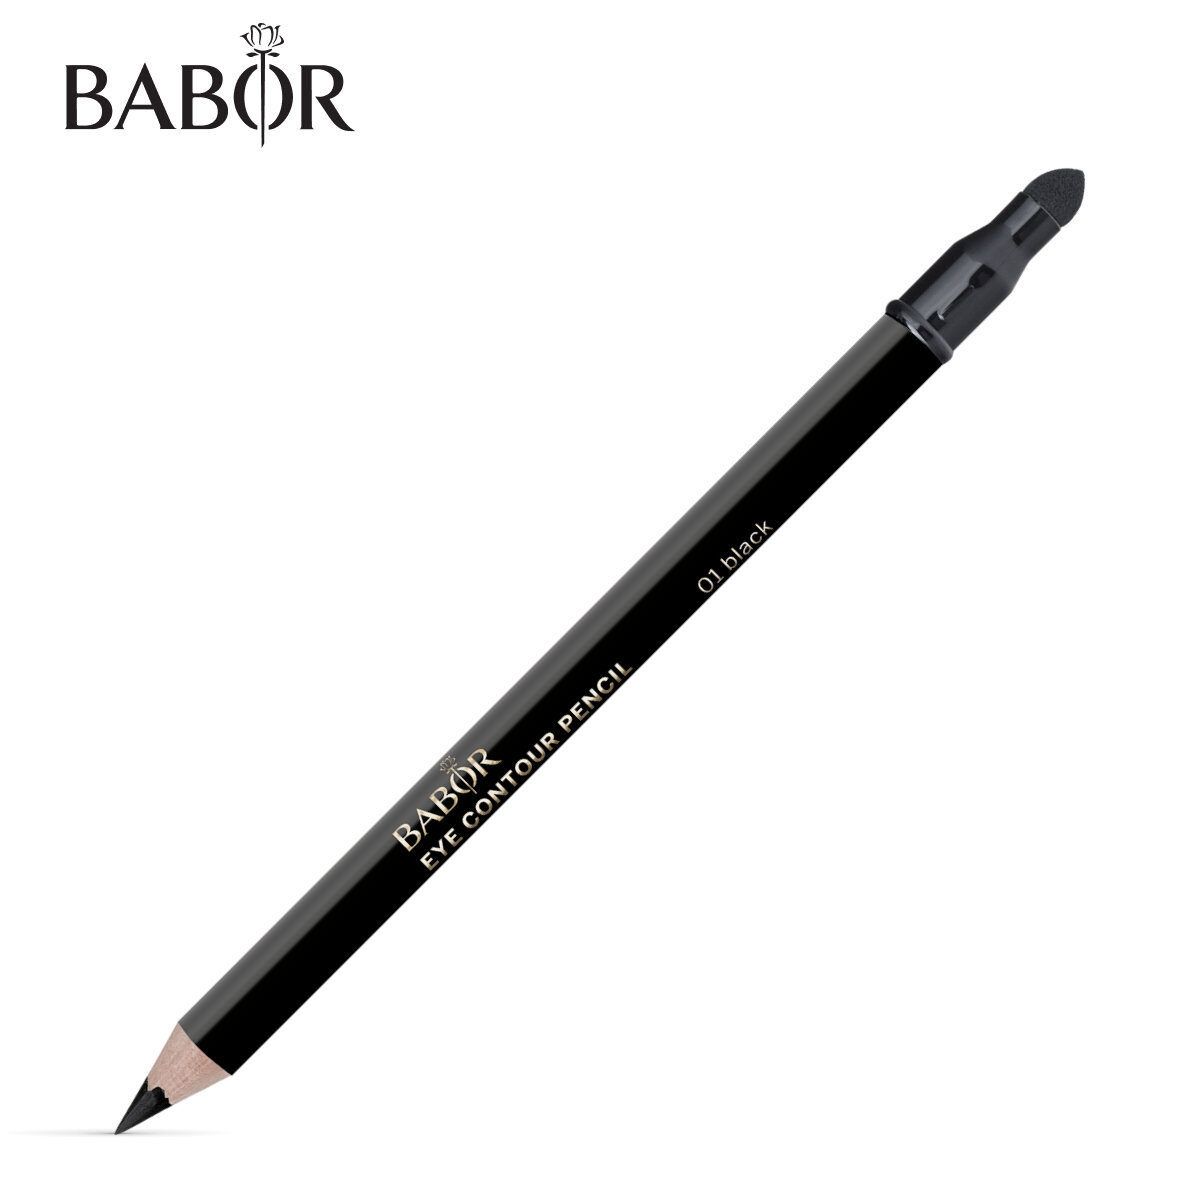 BABOR Контур для Век, тон 01 чёрный / Eye Contour Pencil, 01 black